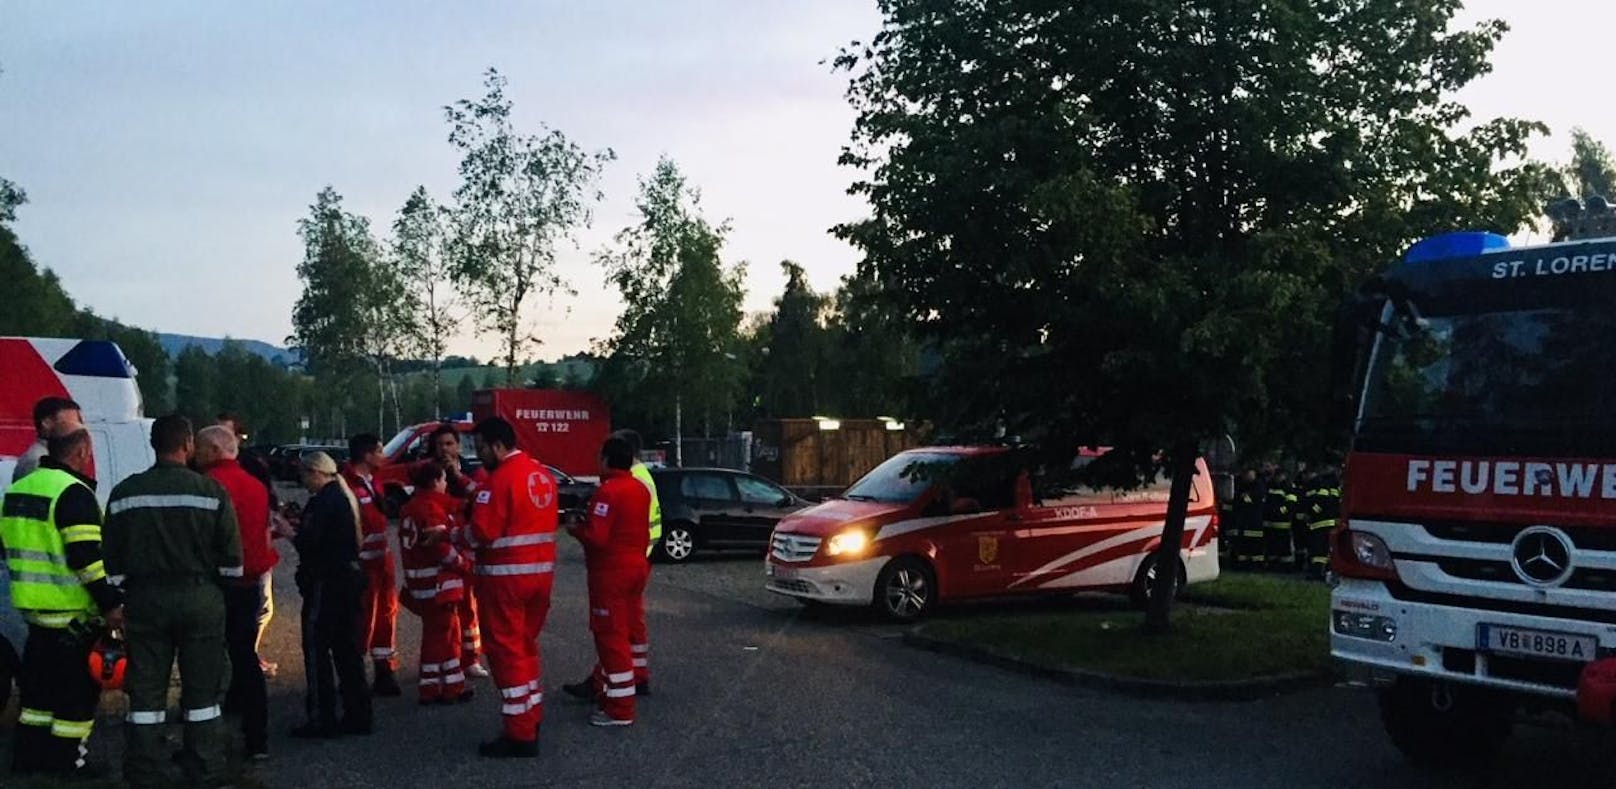 Die Freiwillige Feuerwehr St. Lorenz suchte nach der vermeintlich abgängigen 16-Jährigen.